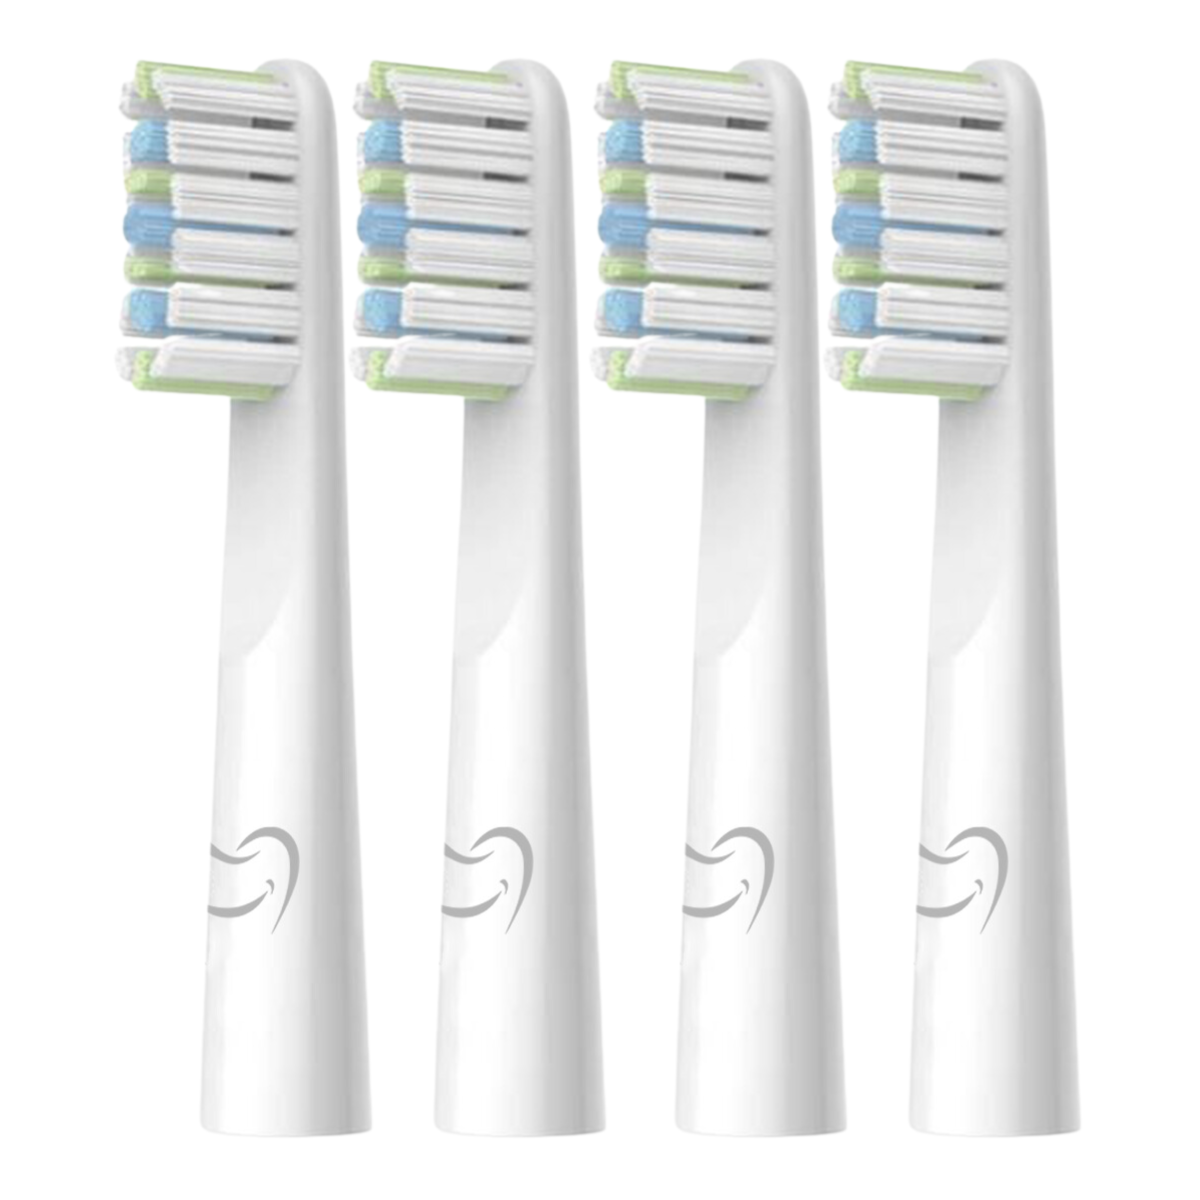 Opzetkoppen (voor lucht-elektrische tandenborstel)